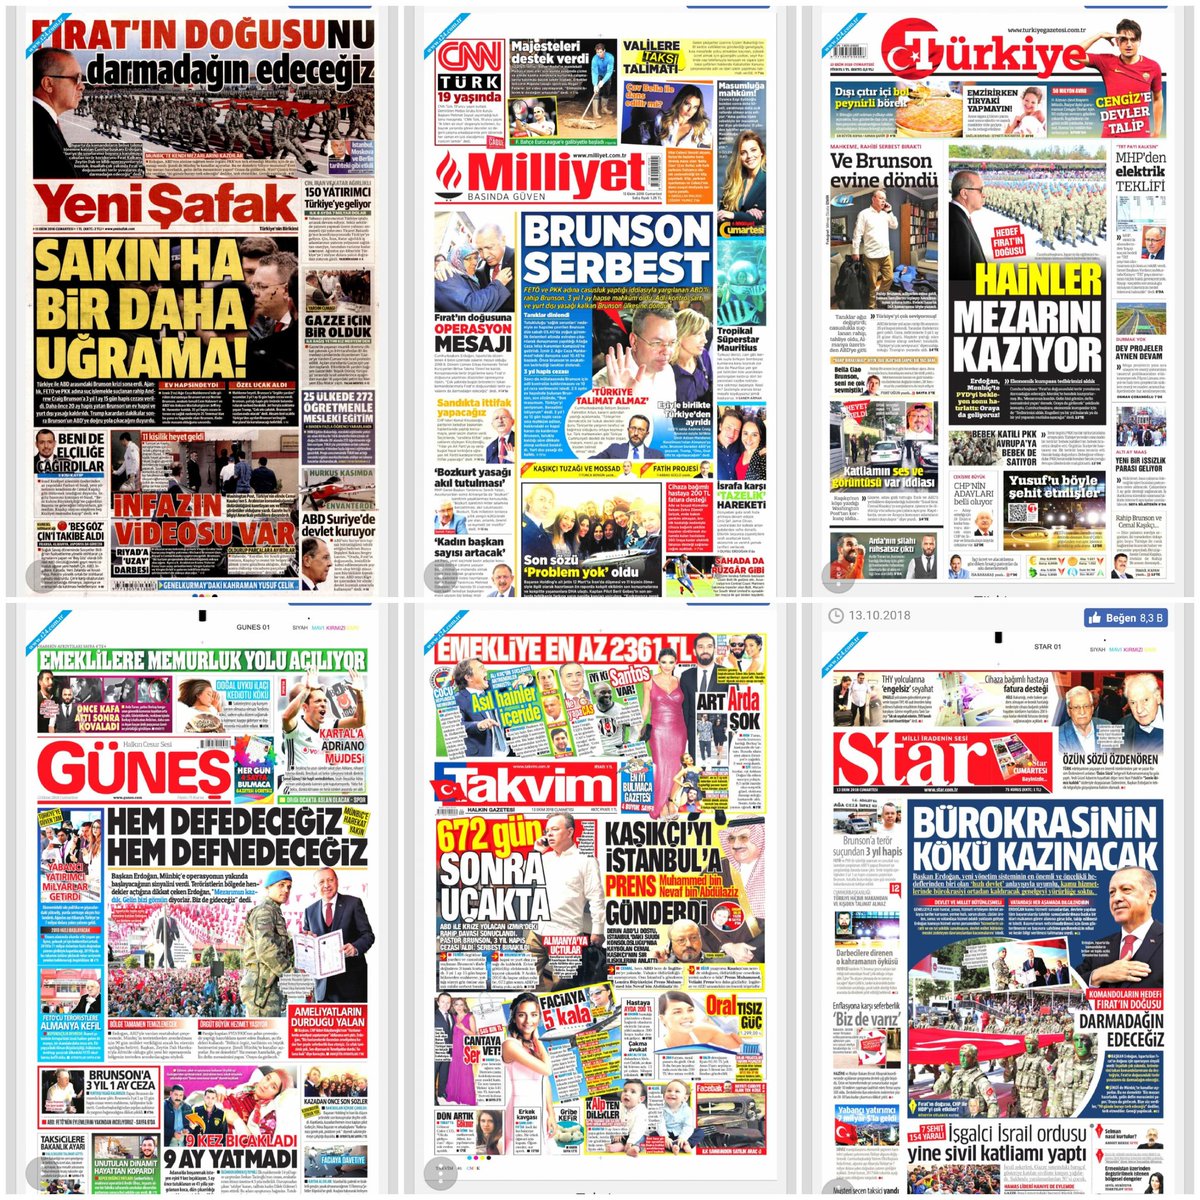 Yandaş medya manşetleri tahmin yarışması